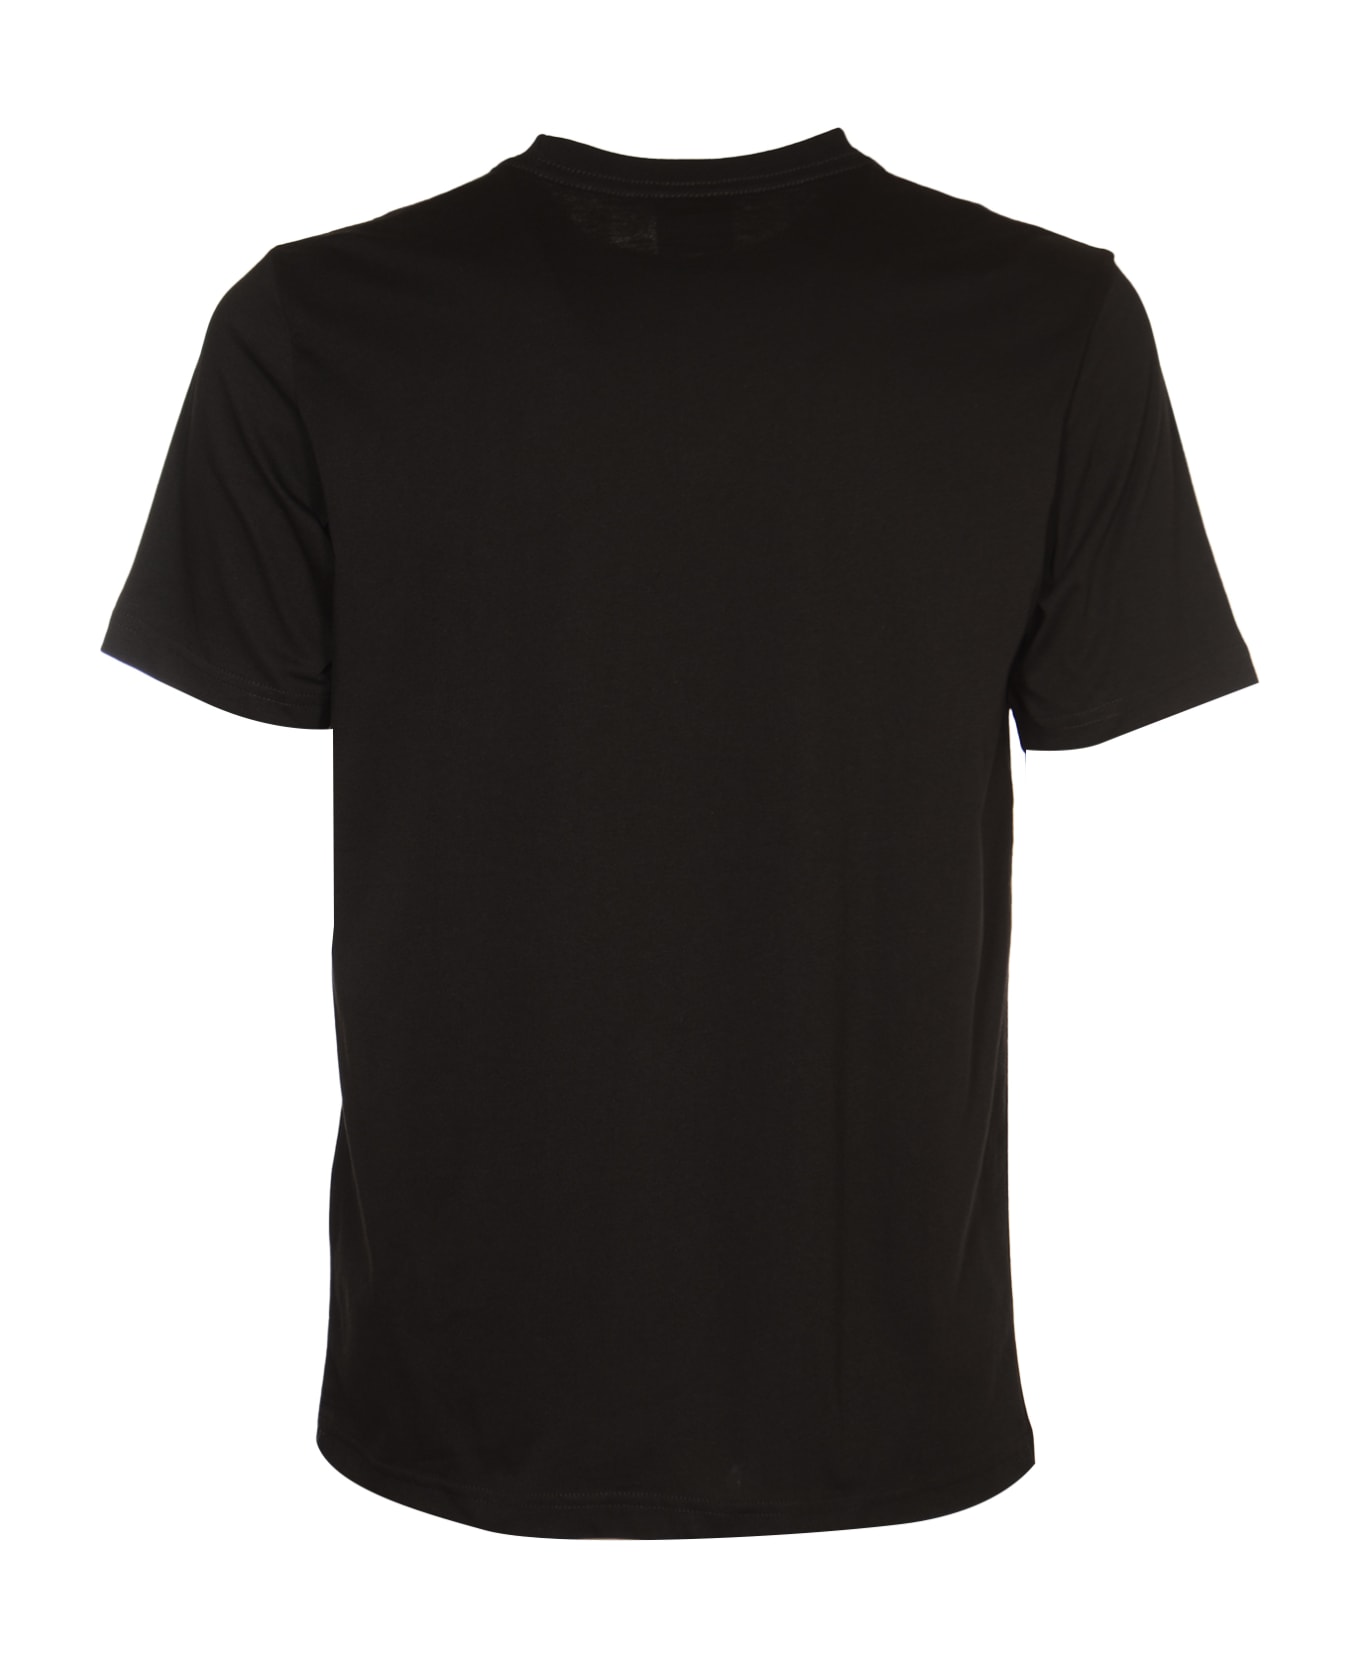 Paul Smith 'teddy' T-shirt - Black シャツ